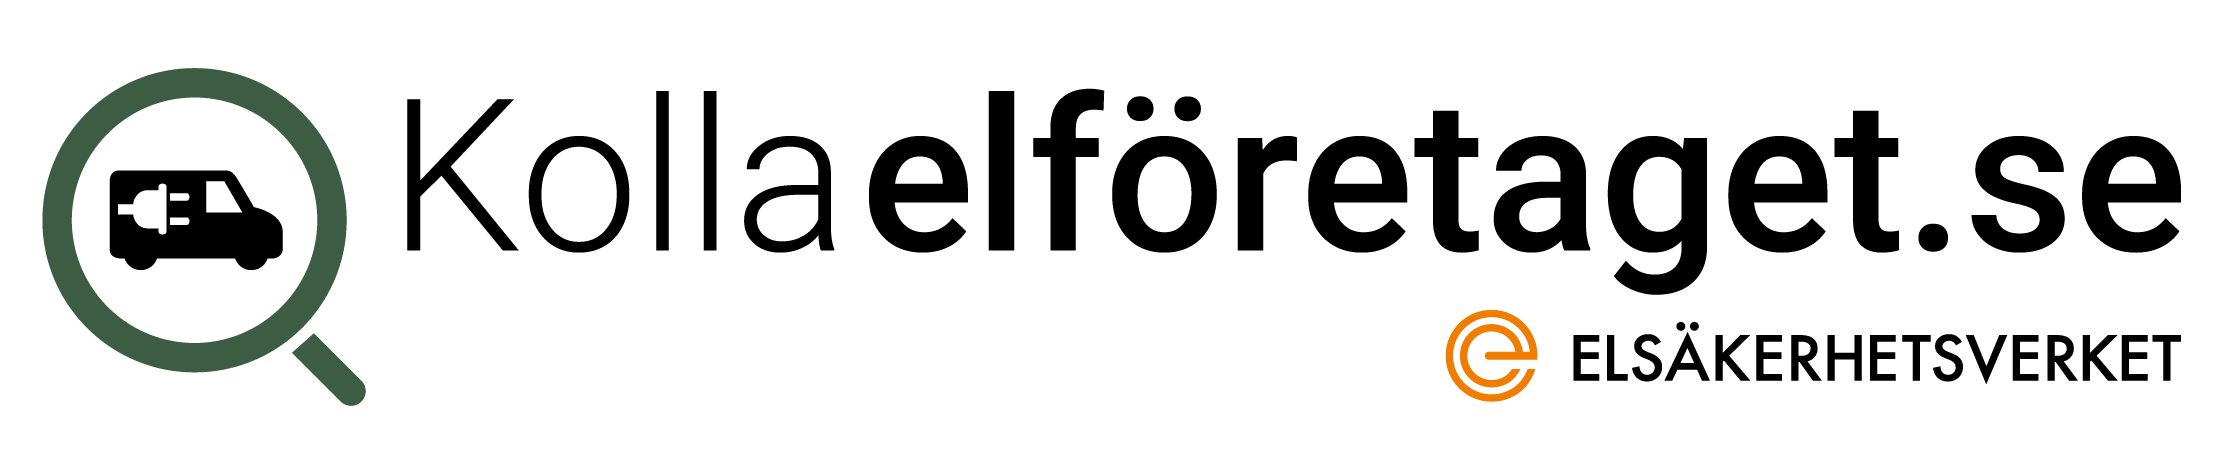 Logotyp för Kolla elföretaget med Elsäkerhetsverket logga